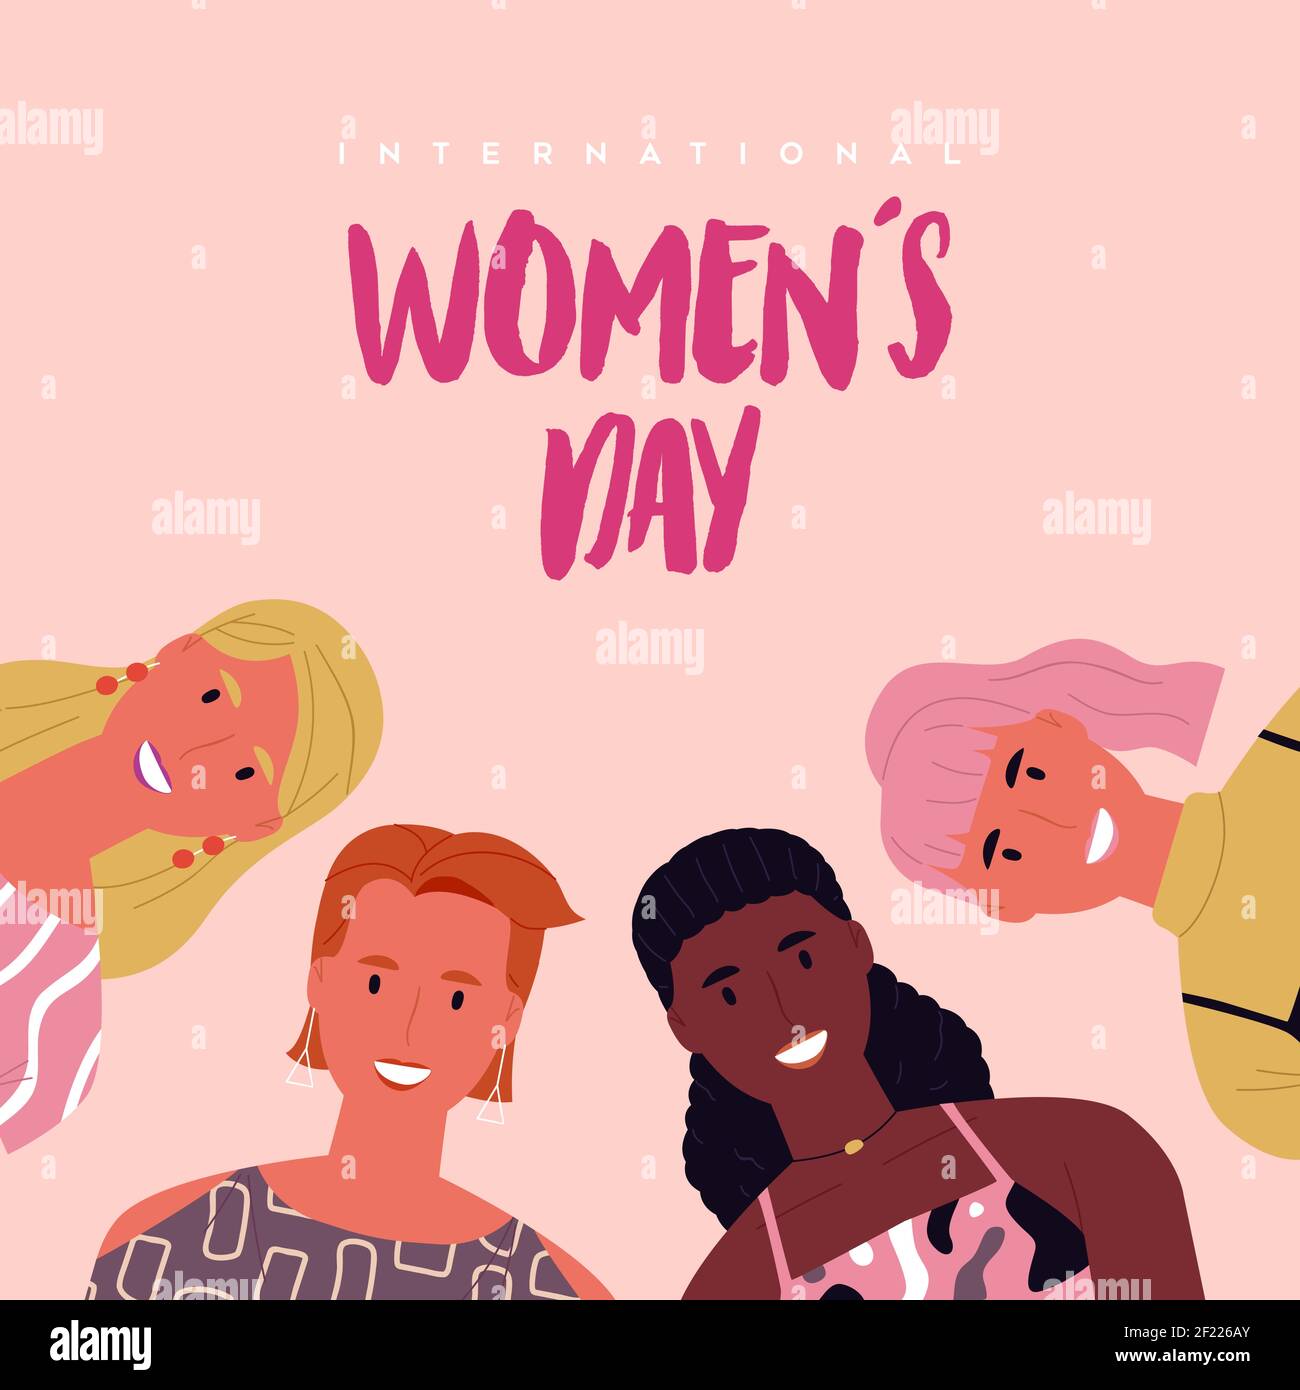 Internationaler Frauentag Grußkarte Illustration von verschiedenen jungen Frauen Charaktere für besondere Frauenrechte Event Urlaub oder feministische Kampagne Des Stock Vektor